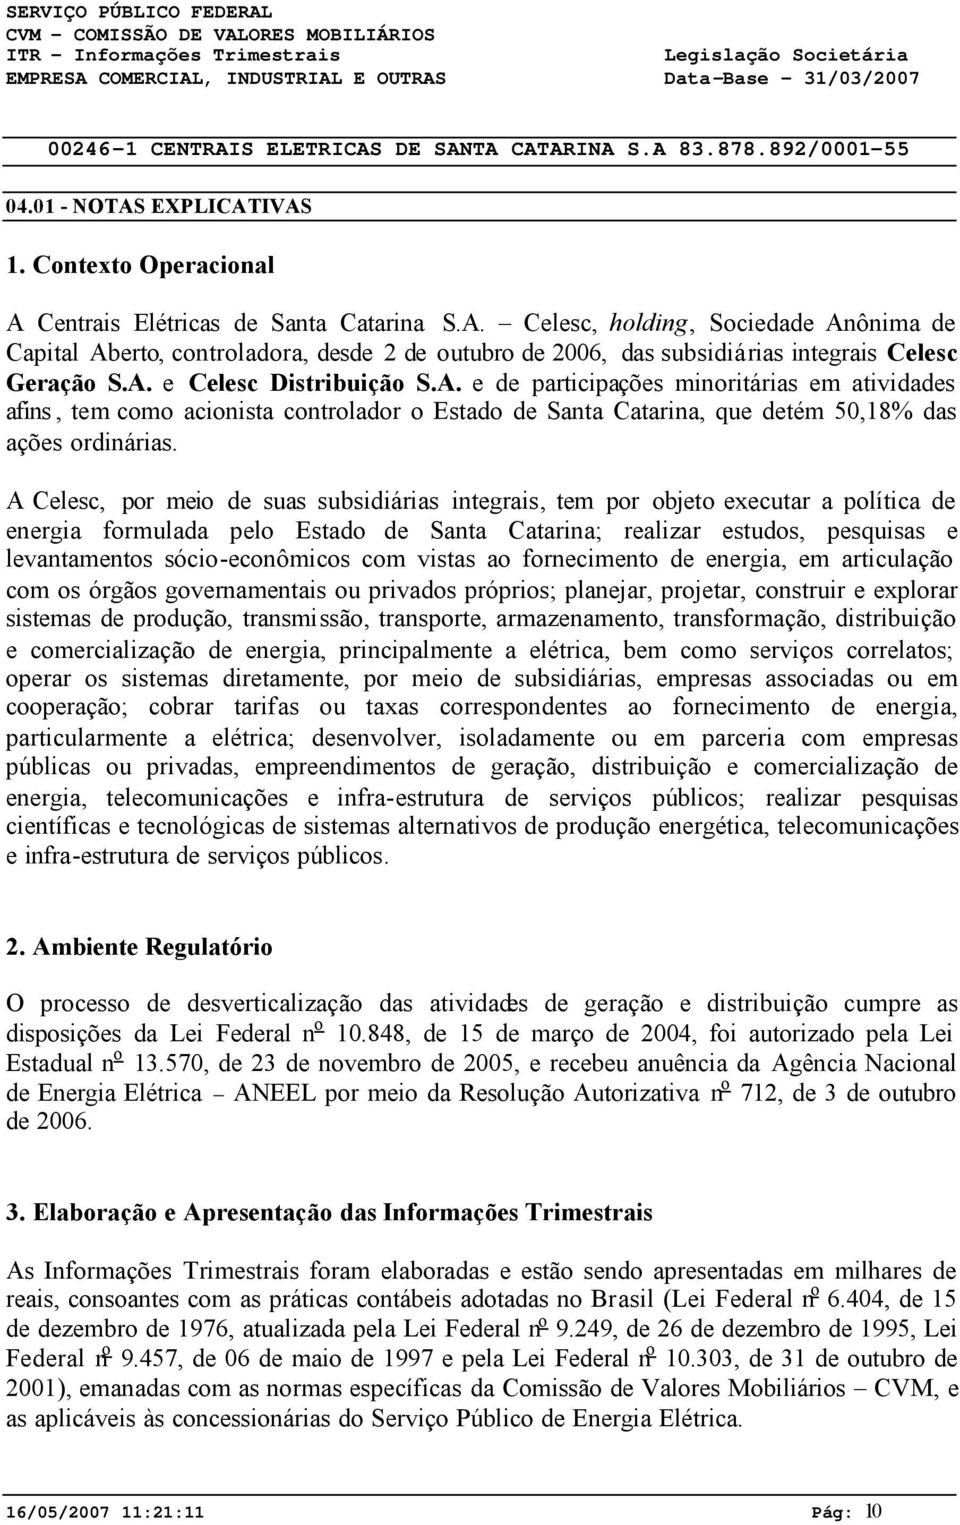 A Celesc, por meio de suas subsidiárias integrais, tem por objeto executar a política de energia formulada pelo Estado de Santa Catarina; realizar estudos, pesquisas e levantamentos sócio-econômicos